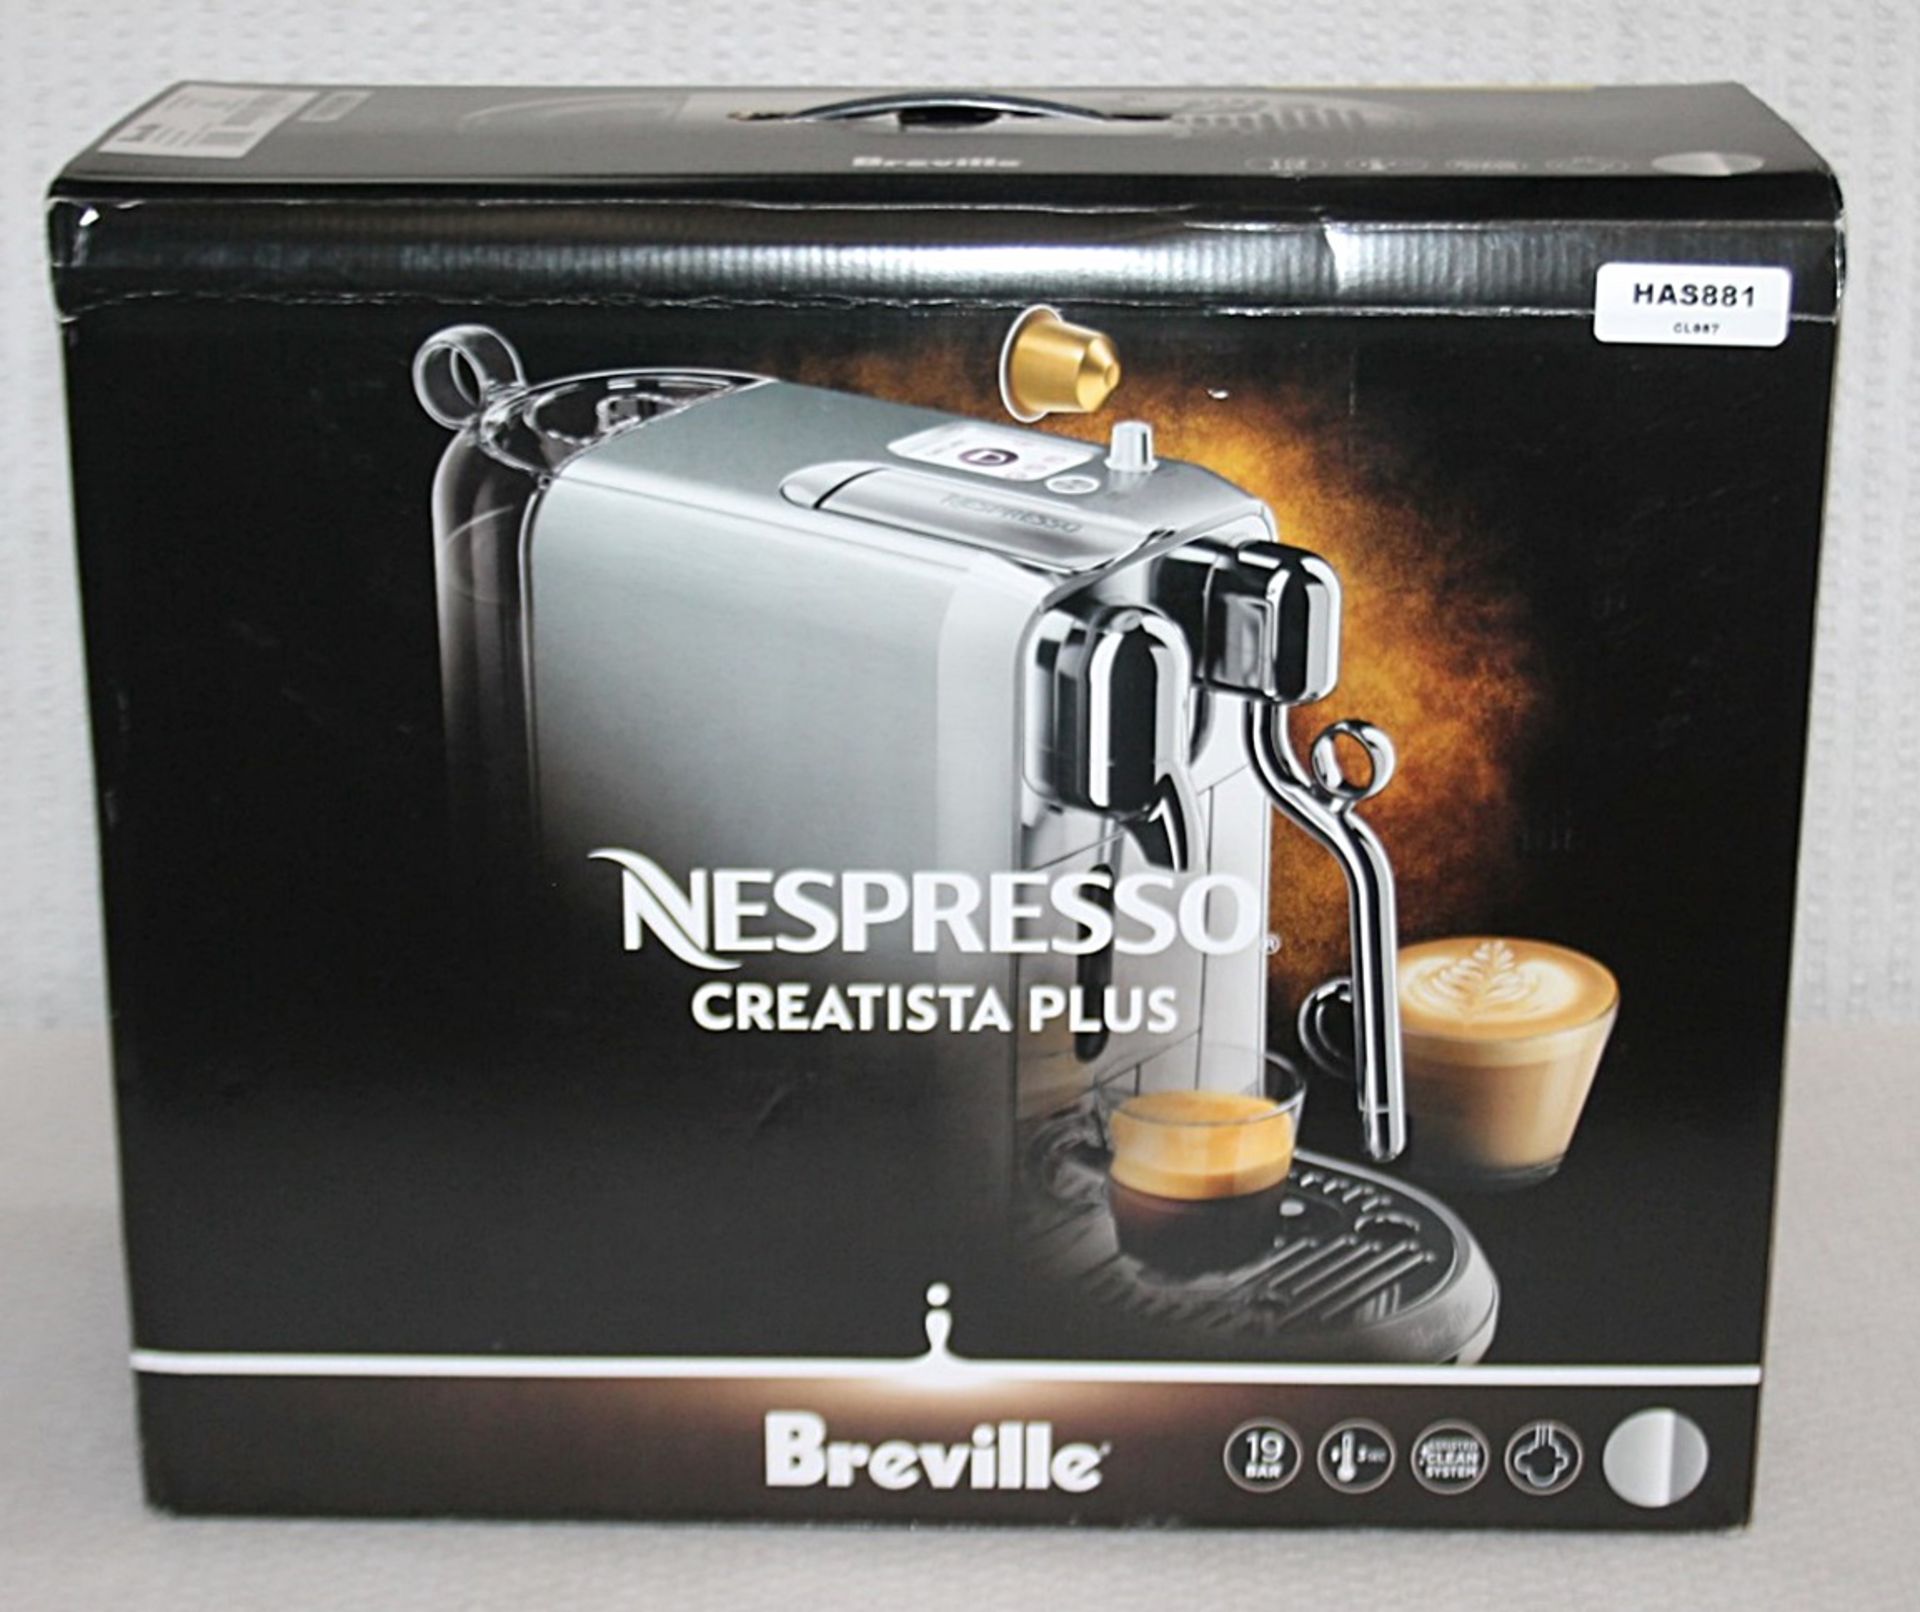 1 x NESPRESSO 'Creatista Plus' Coffee Machine In Silver - Original Price £479.95 - Boxed Stock - Image 11 of 18